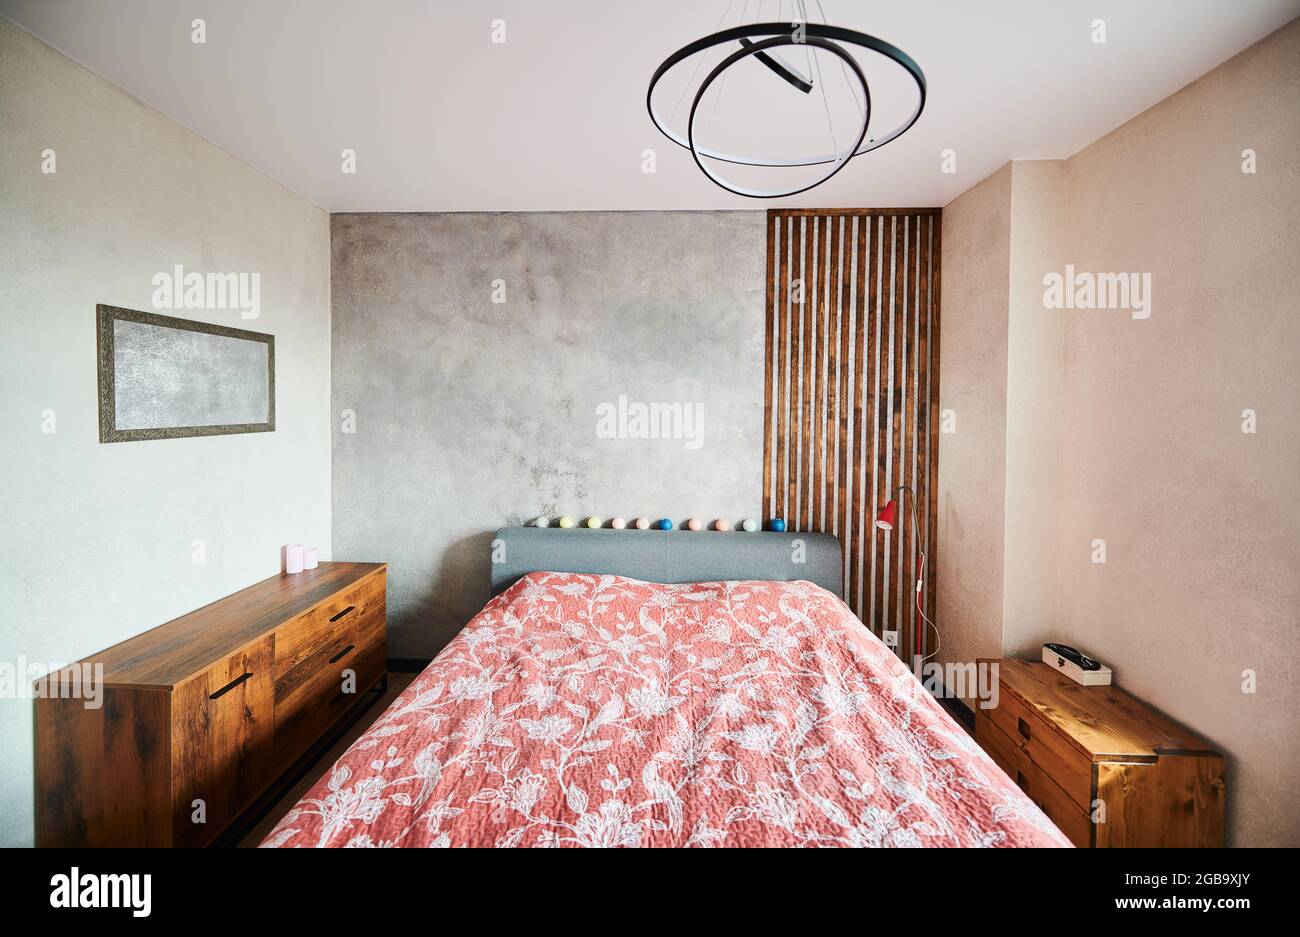 Vorderansicht der modernen Wohnung in weichen warmen Farben, großes Schlafzimmer und stilvolle braune Nachttische. Konzept der modernen Innenausstattung geräumiges Schlafzimmer mit schönen Möbeln. Stockfoto